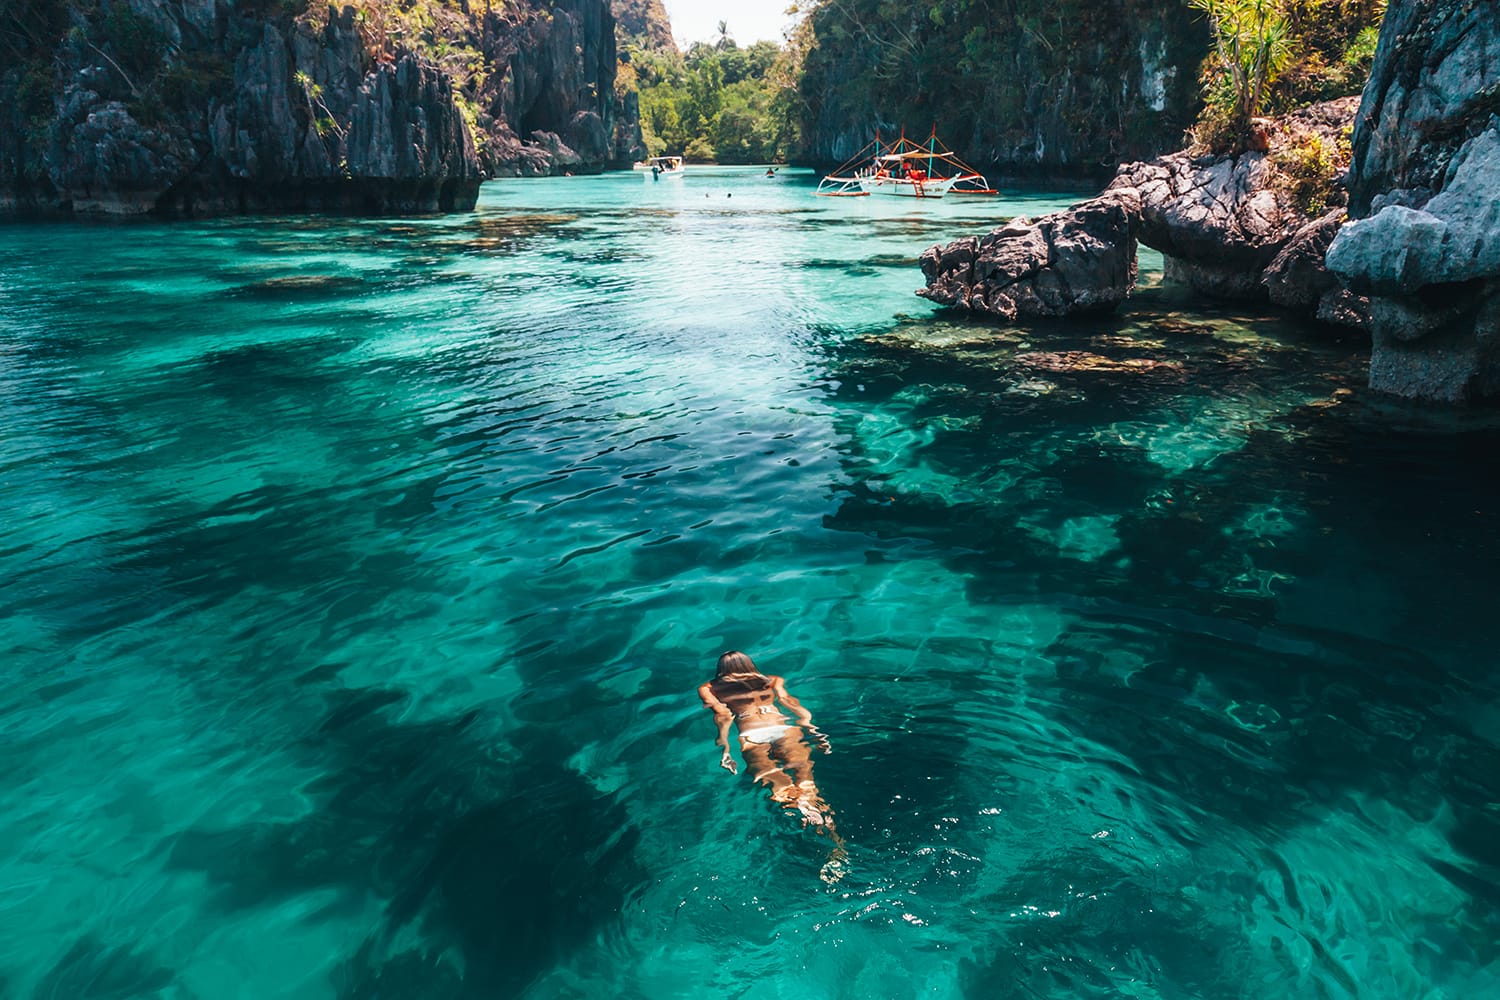 Νεαρή γυναίκα που κολυμπά σε καθαρό θαλασσινό νερό στη λιμνοθάλασσα και κοιτάζει το όμορφο τοπίο. Ταξιδιωτική περιήγηση στην Ασία: El Nido, Palawan, Φιλιππίνες